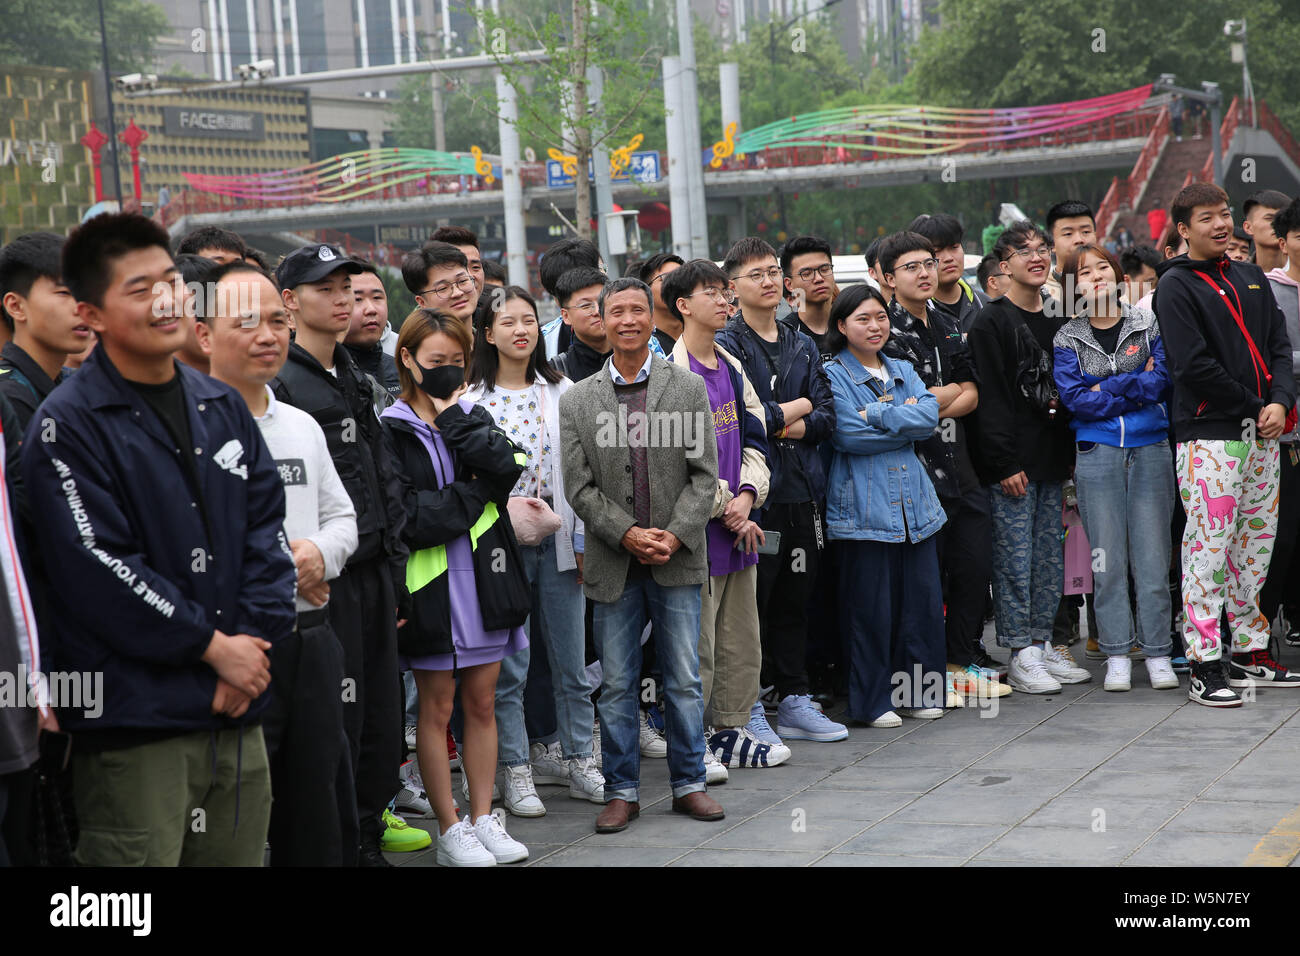 Los jóvenes compradores chinos cola en frente de una tienda de ropa deportiva de Nike para comprar zapatillas de edición limitada en la ciudad Xi'an, en el noroeste de la provincia